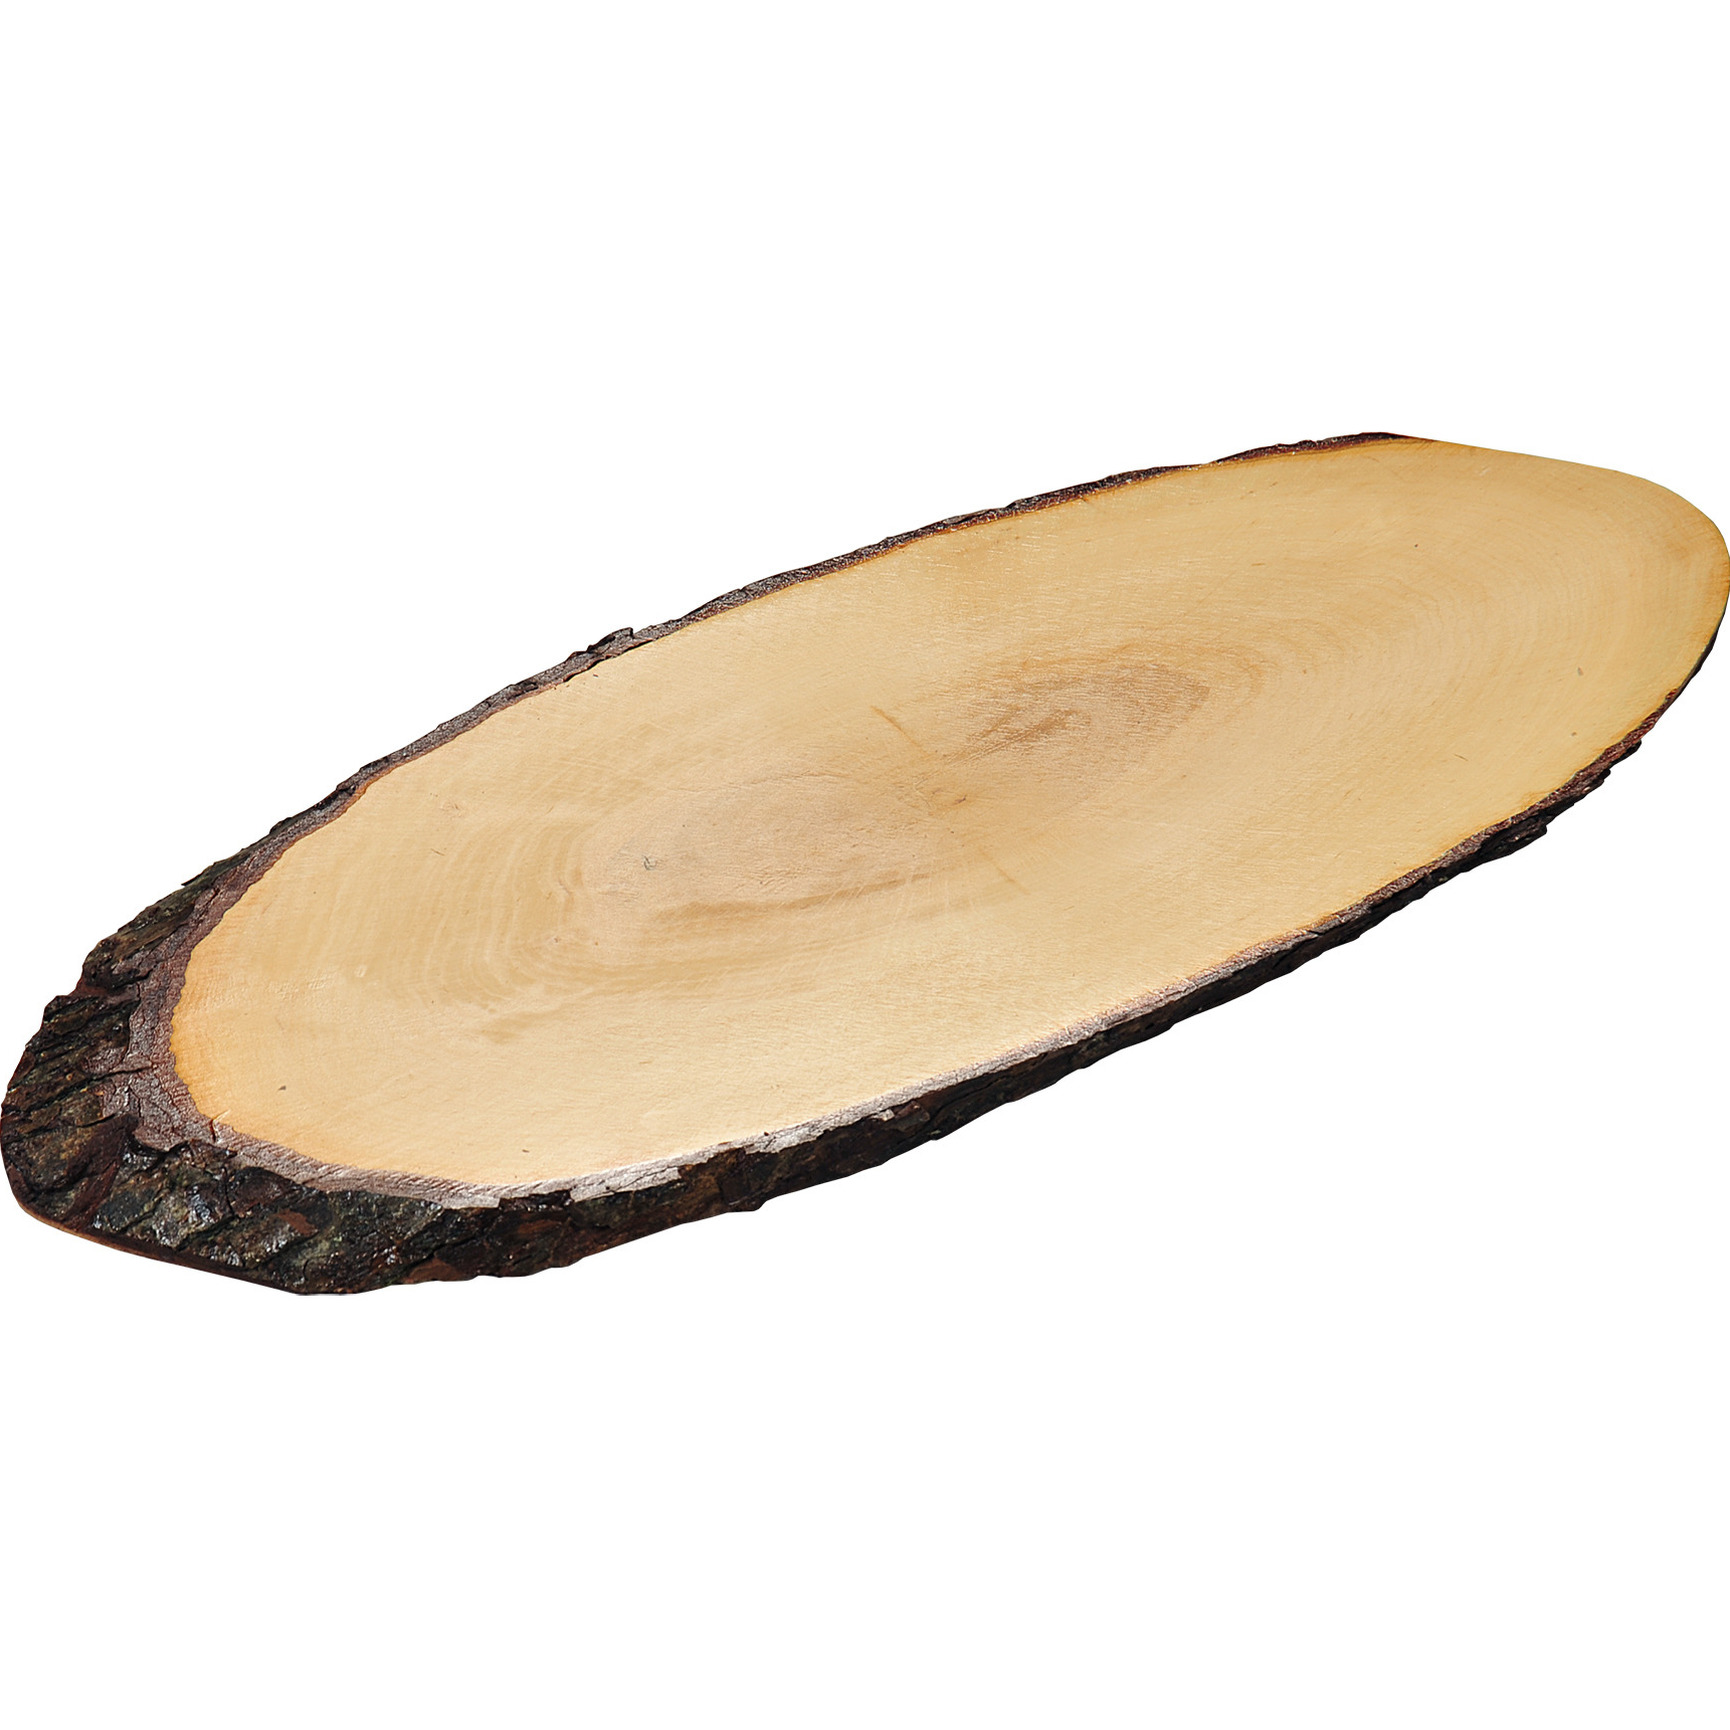 1x Ovale grote boomstam/boomschors houten serveerplanken 20 x 50-59 cm -